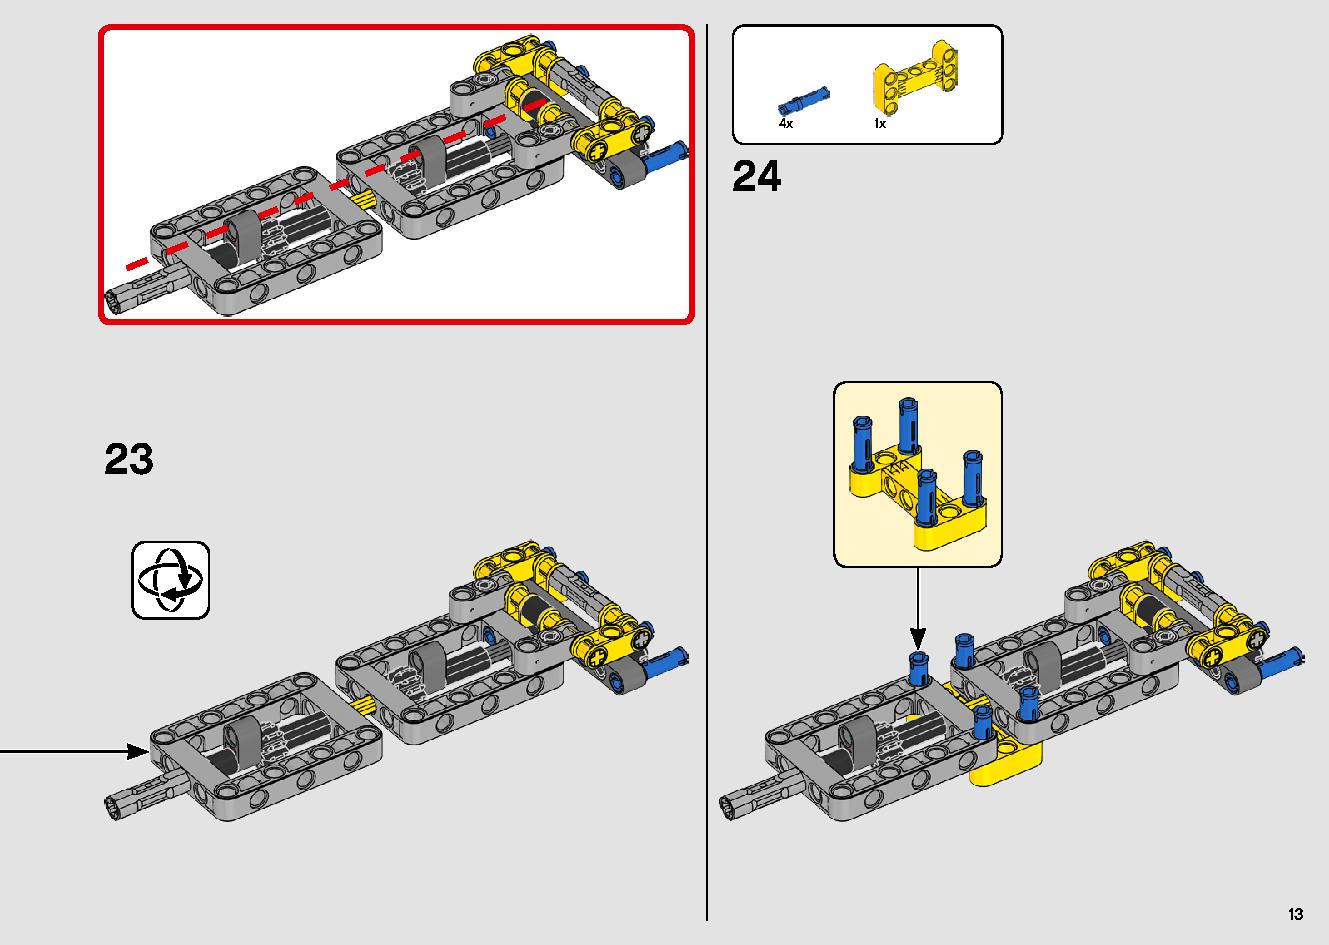 移動式クレーン車 42108 レゴの商品情報 レゴの説明書・組立方法 13 page